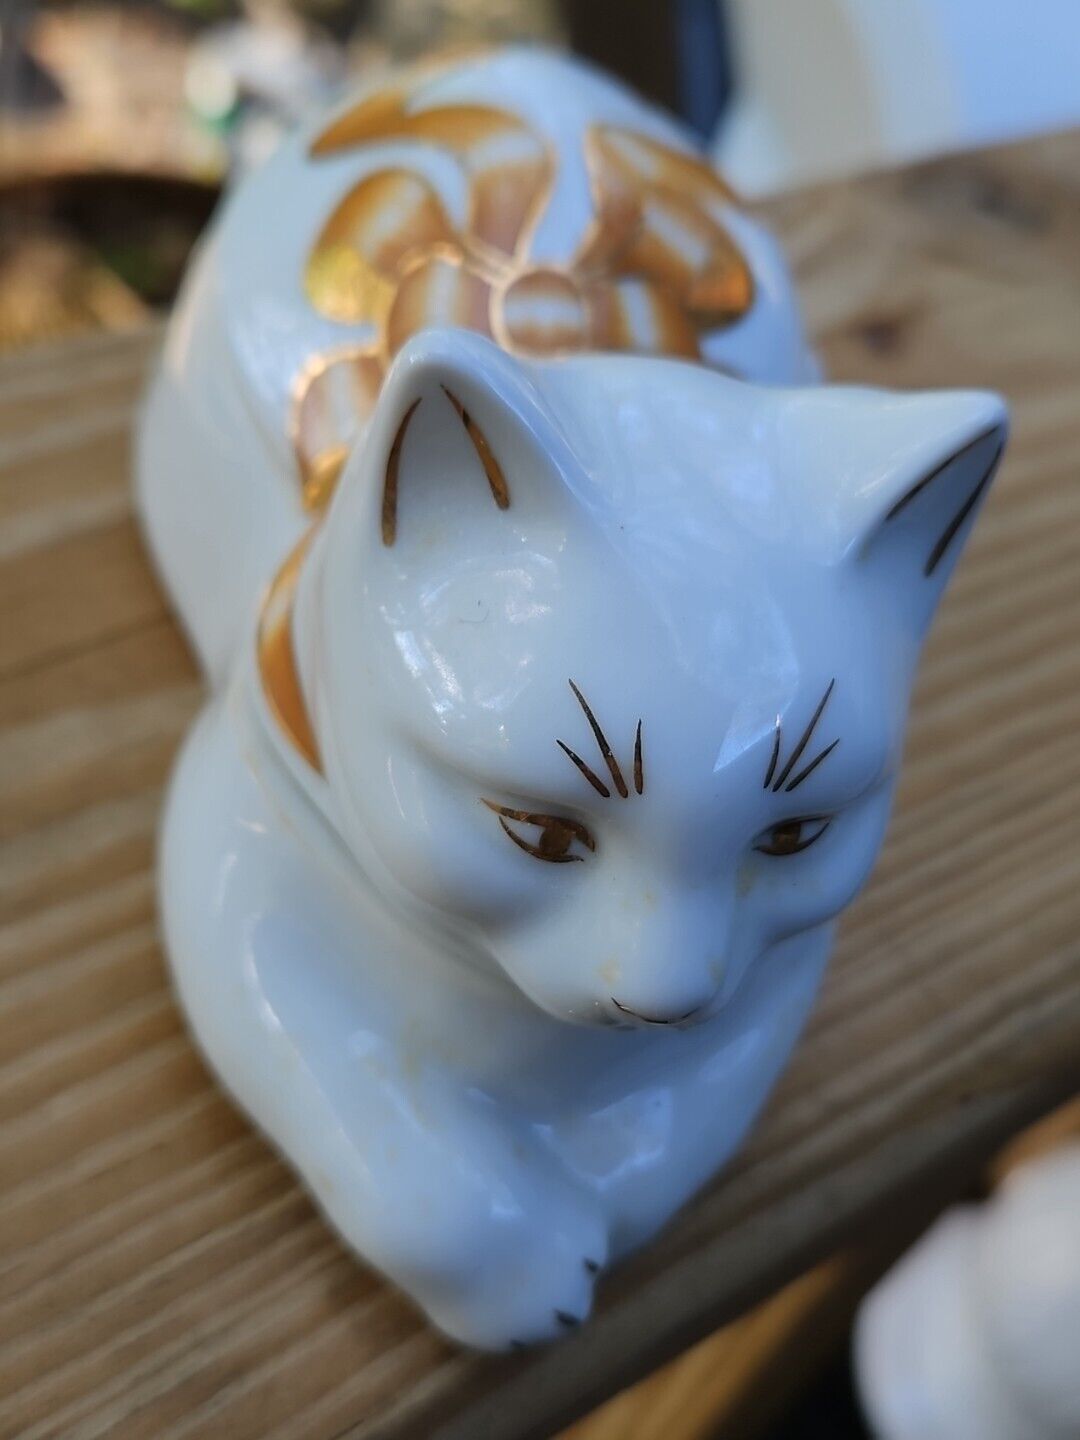 Elizabeth Arden Cat Trinket Box Candle Scented GOLD GILT Vintage Porcelain  Без бренда - фотография #3